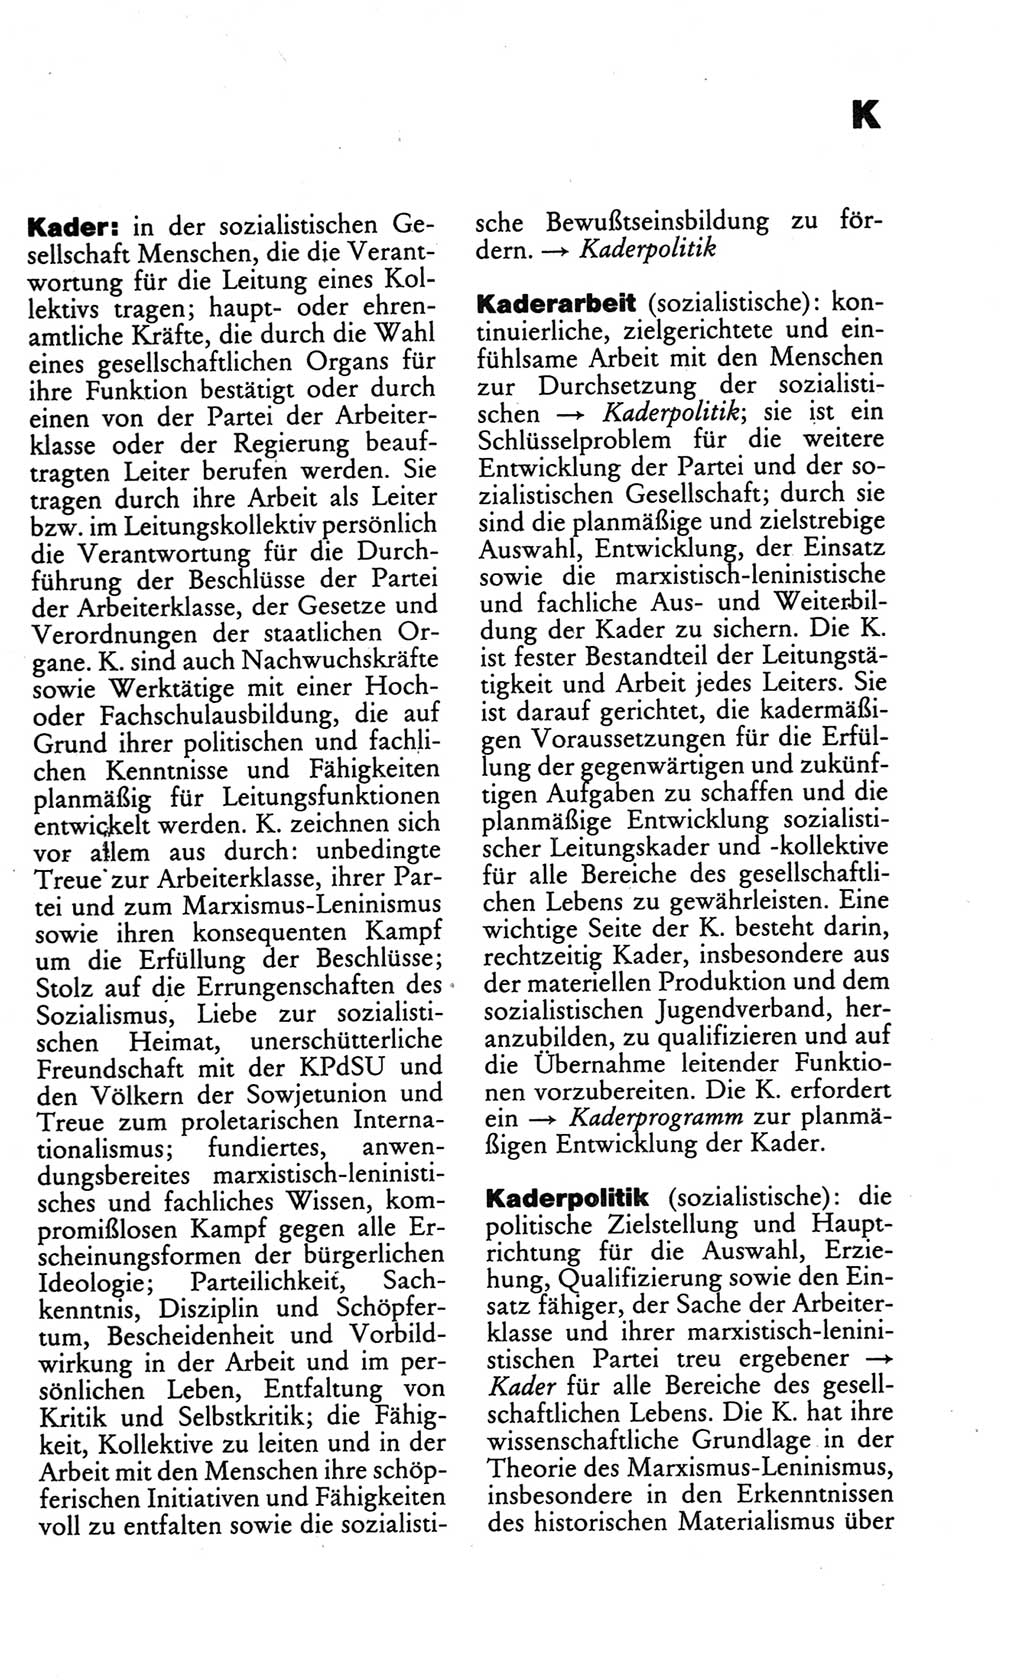 Kleines politisches Wörterbuch [Deutsche Demokratische Republik (DDR)] 1986, Seite 447 (Kl. pol. Wb. DDR 1986, S. 447)